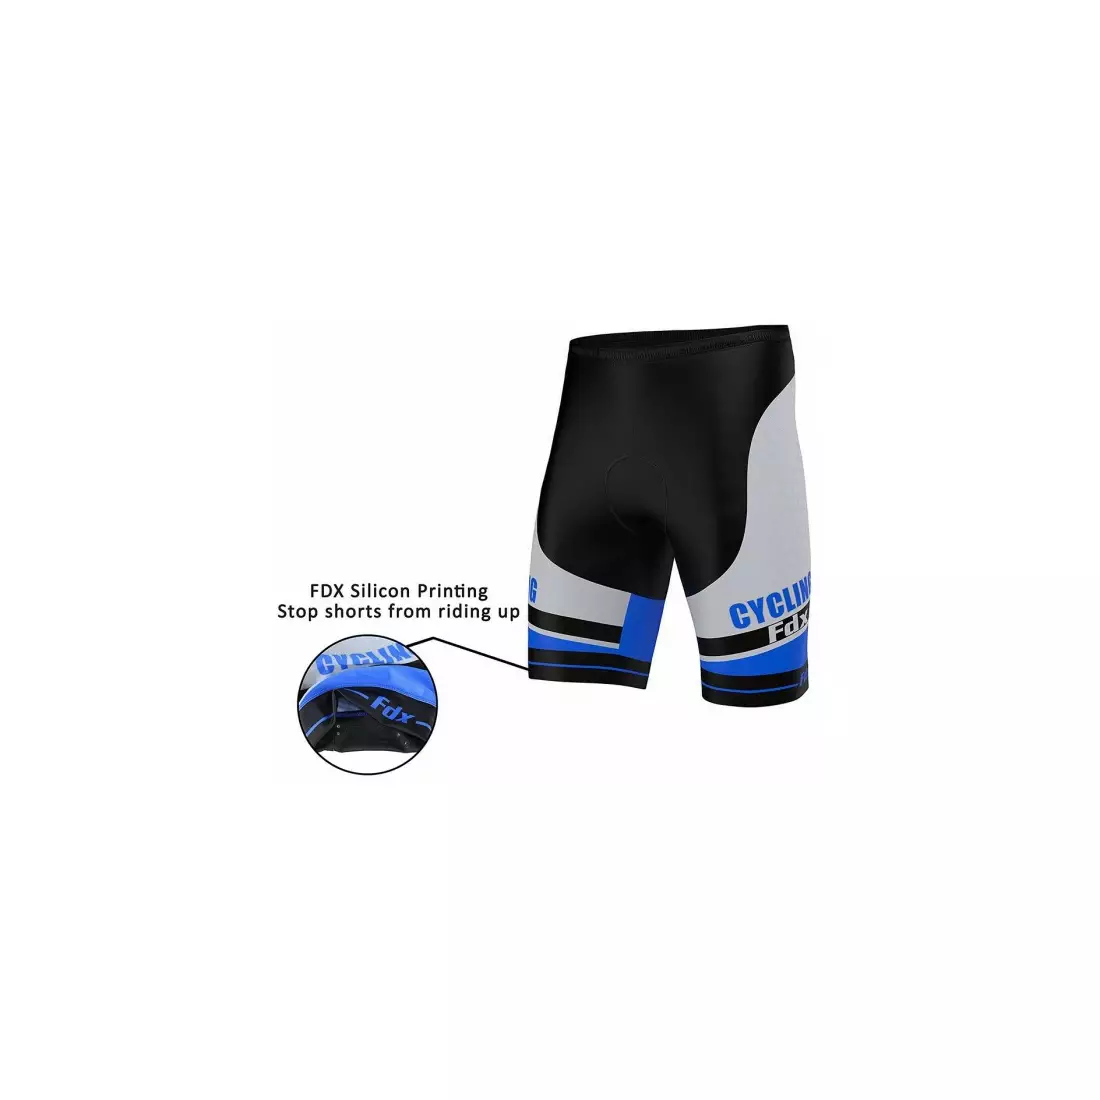 Pánske cyklistické šortky FDX 1070 v čiernej a modrej farbe